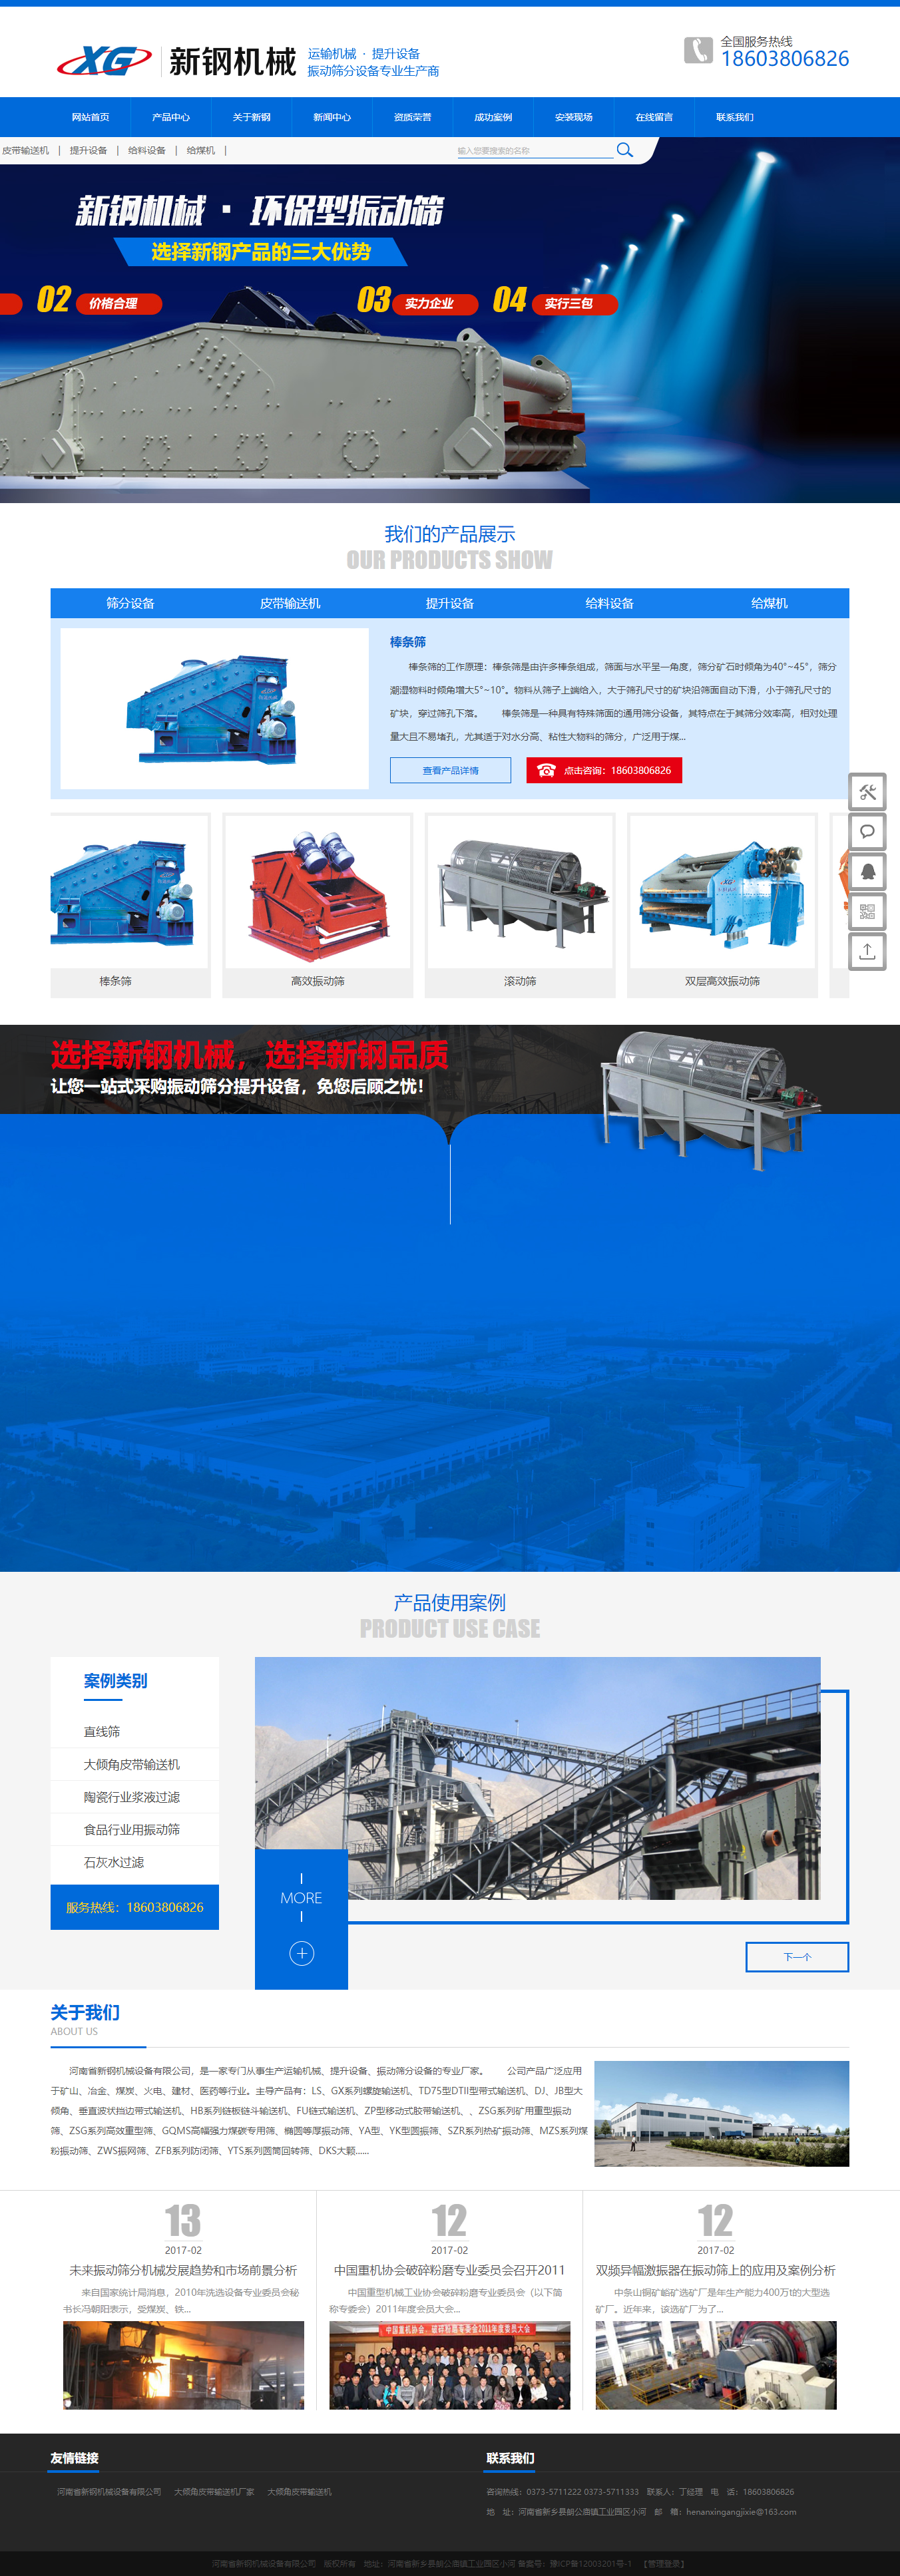 河南省新钢机械设备有限公司网站案例